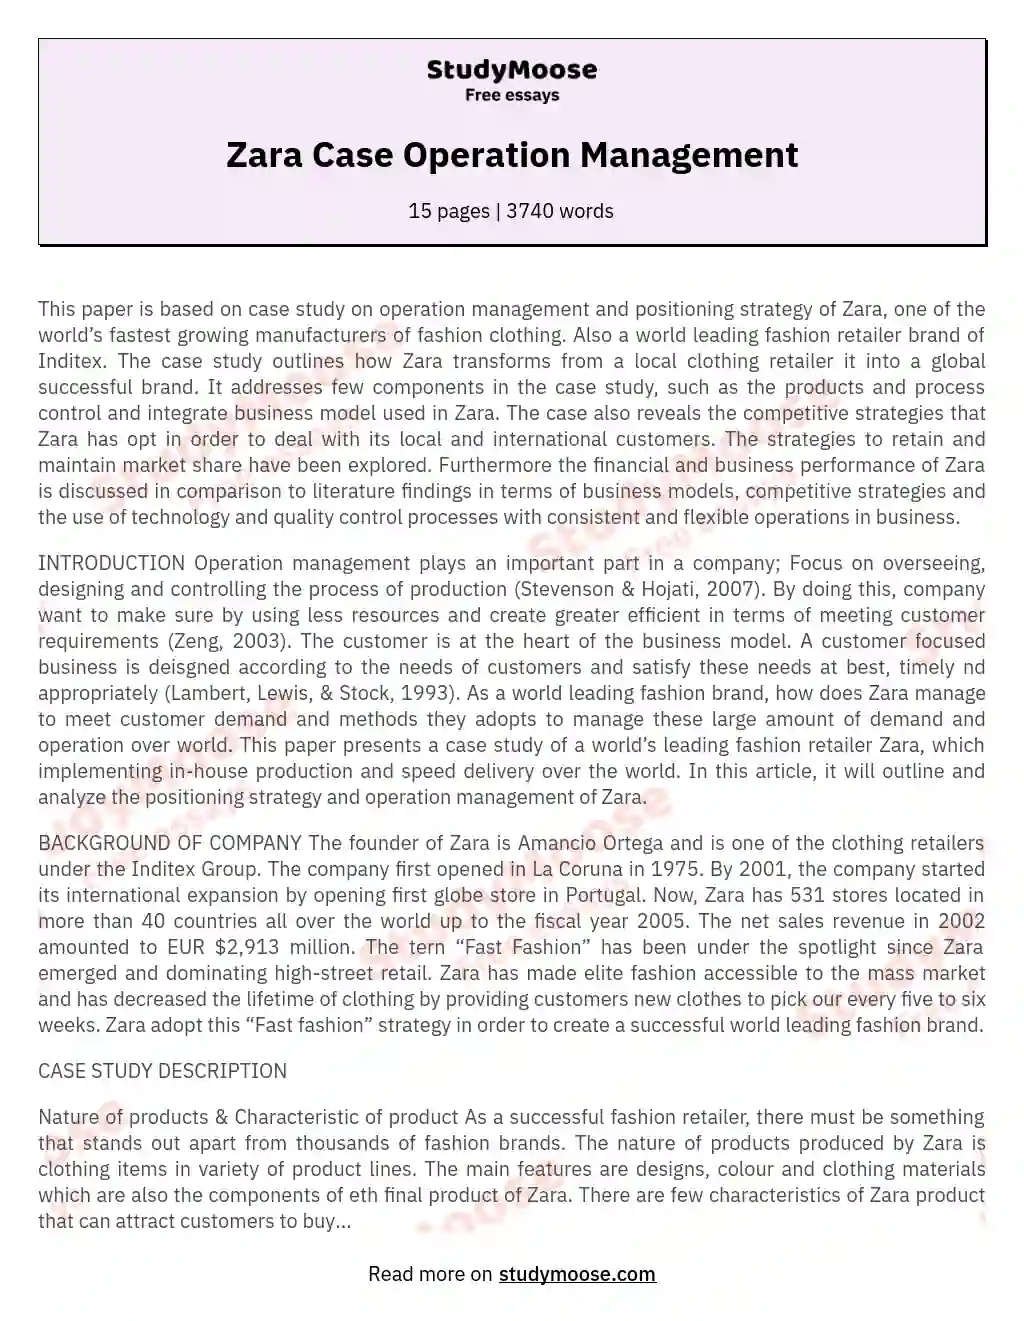 Zara Case Operation Management essay